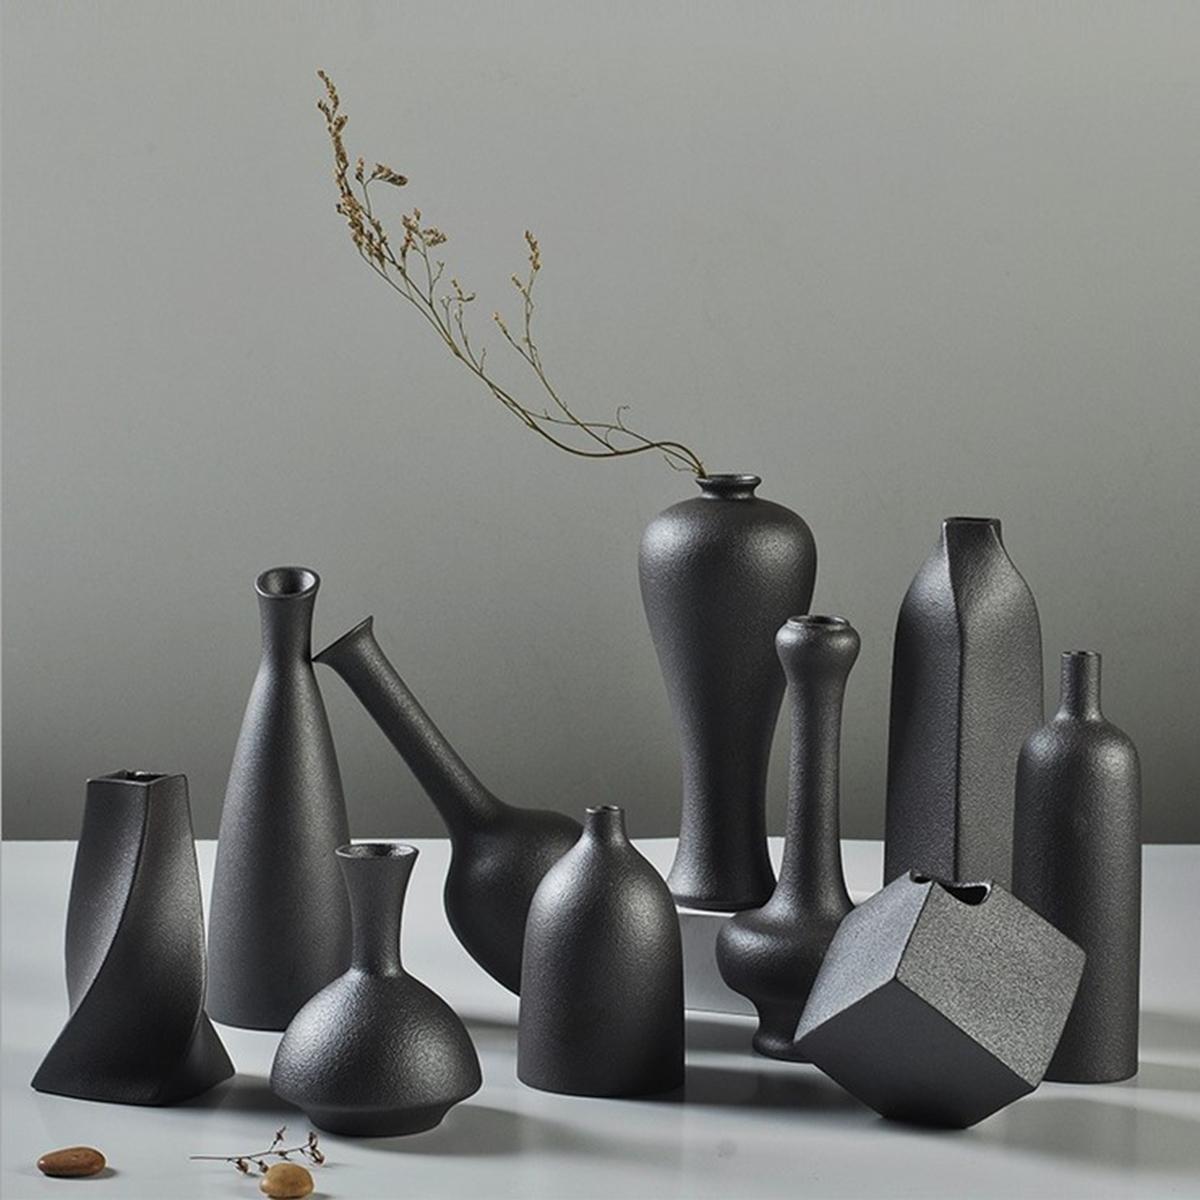 Ceramic Flower Vase Porcelain Black Home Office Minimalist Decor Art Crafts Vase